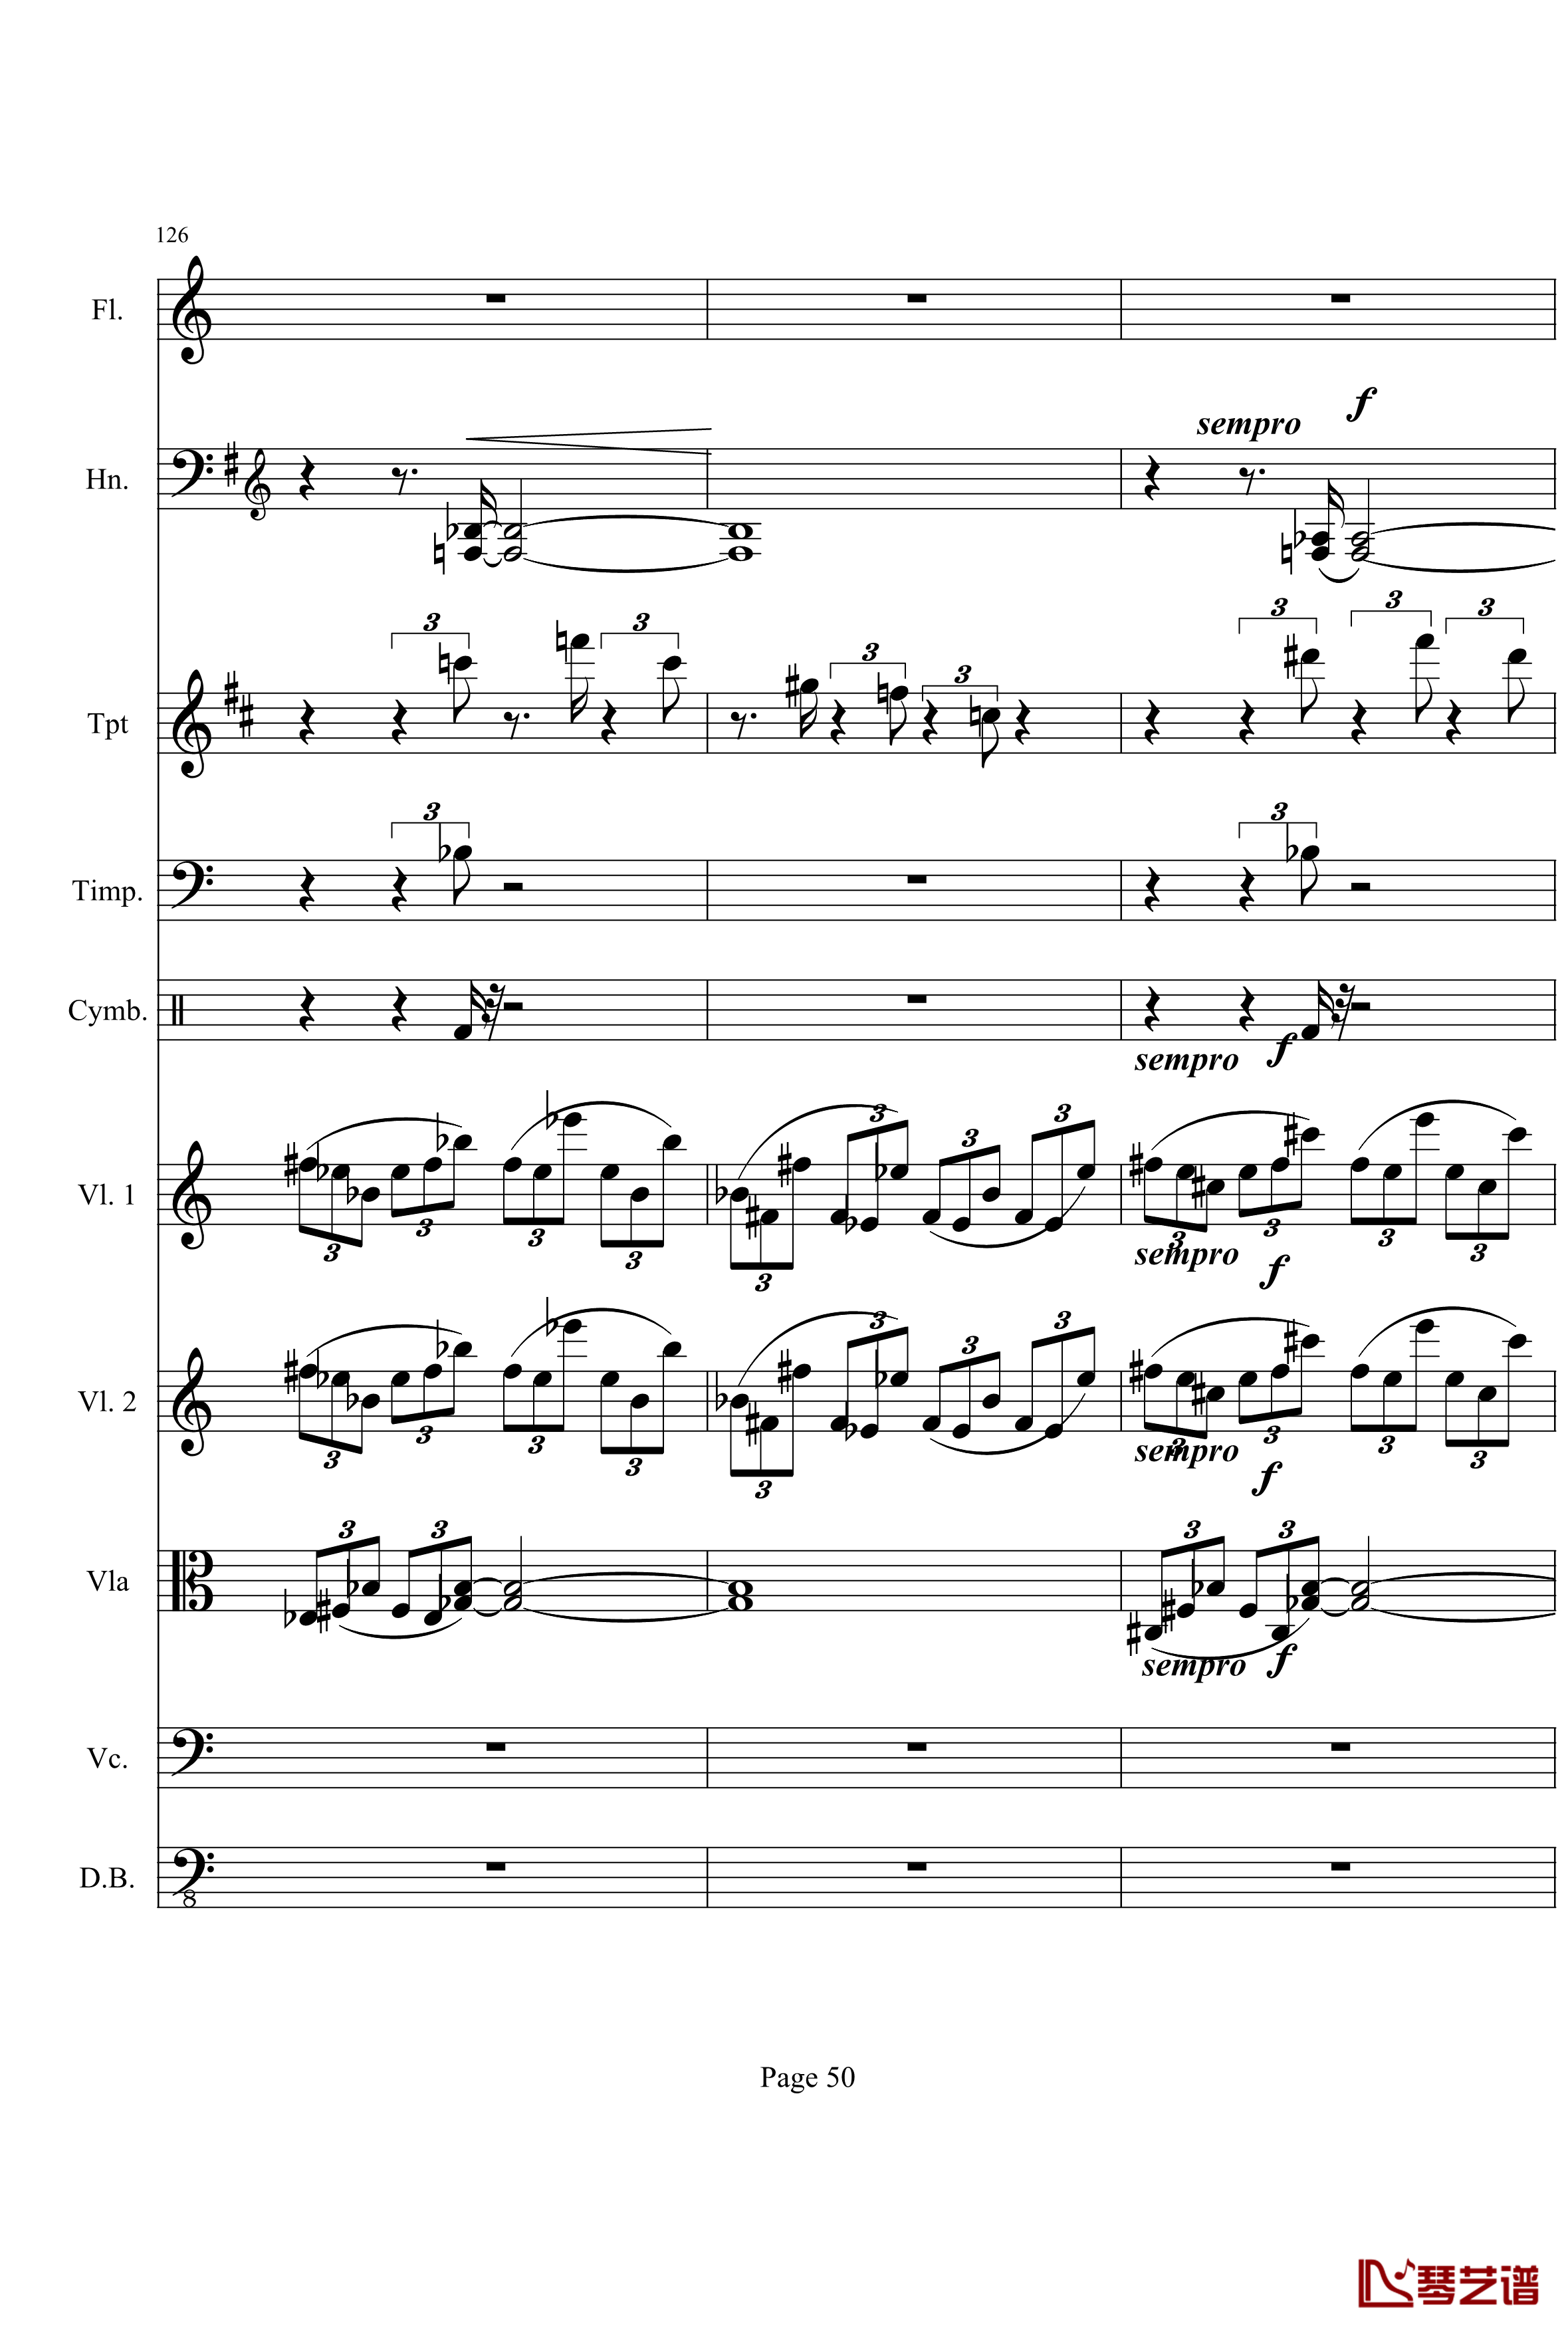 奏鸣曲之交响钢琴谱-第21首-Ⅰ-贝多芬-beethoven50